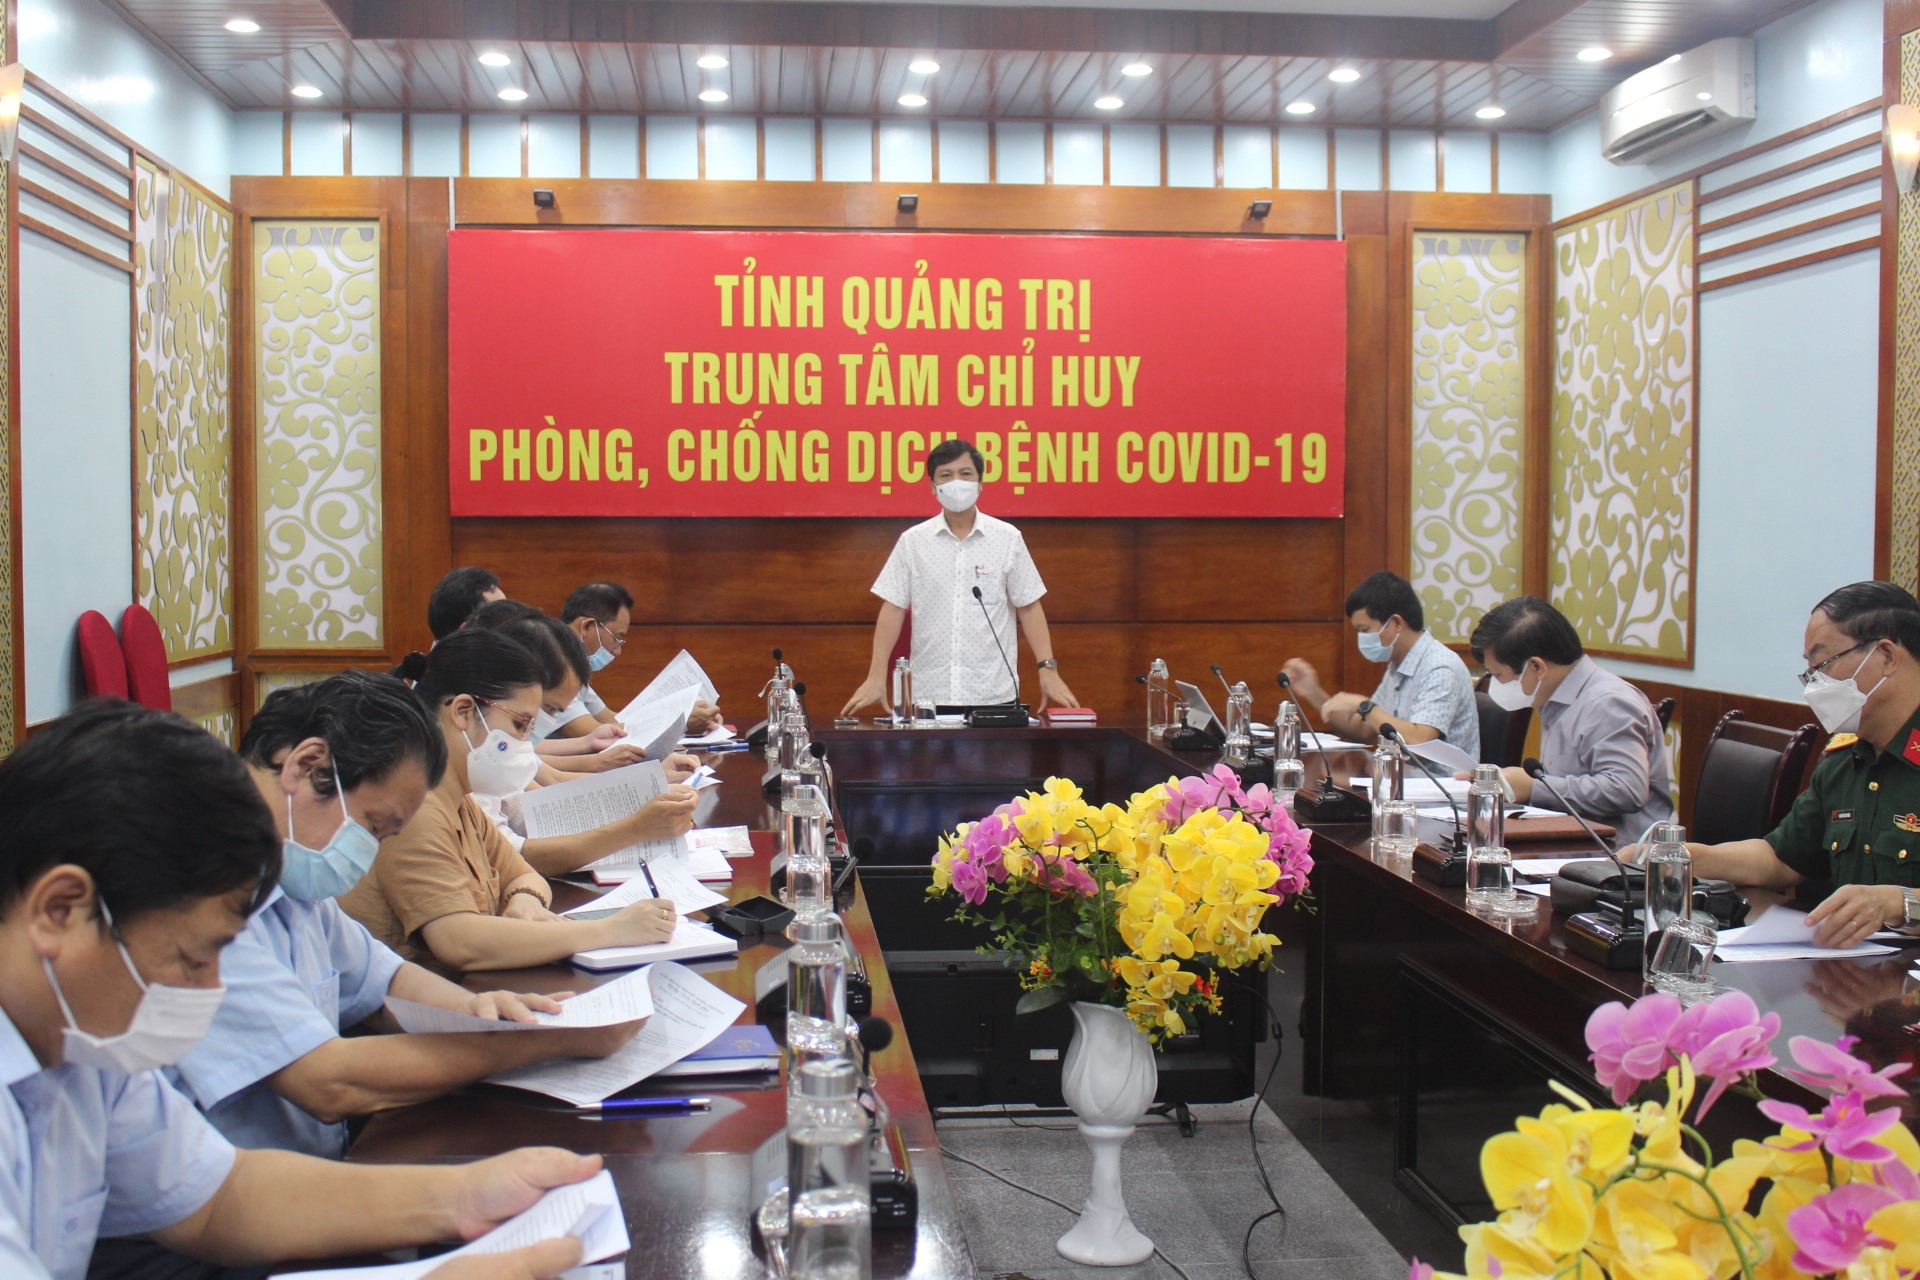 Phó Chủ tịch UBND tỉnh Hoàng Nam yêu cầu đẩy nhanh tiến độ tiêm vắc xin phòng COVID-19 để tiến tới thích ứng chung sống an toàn với dịch bệnh – Ảnh: N.T.H